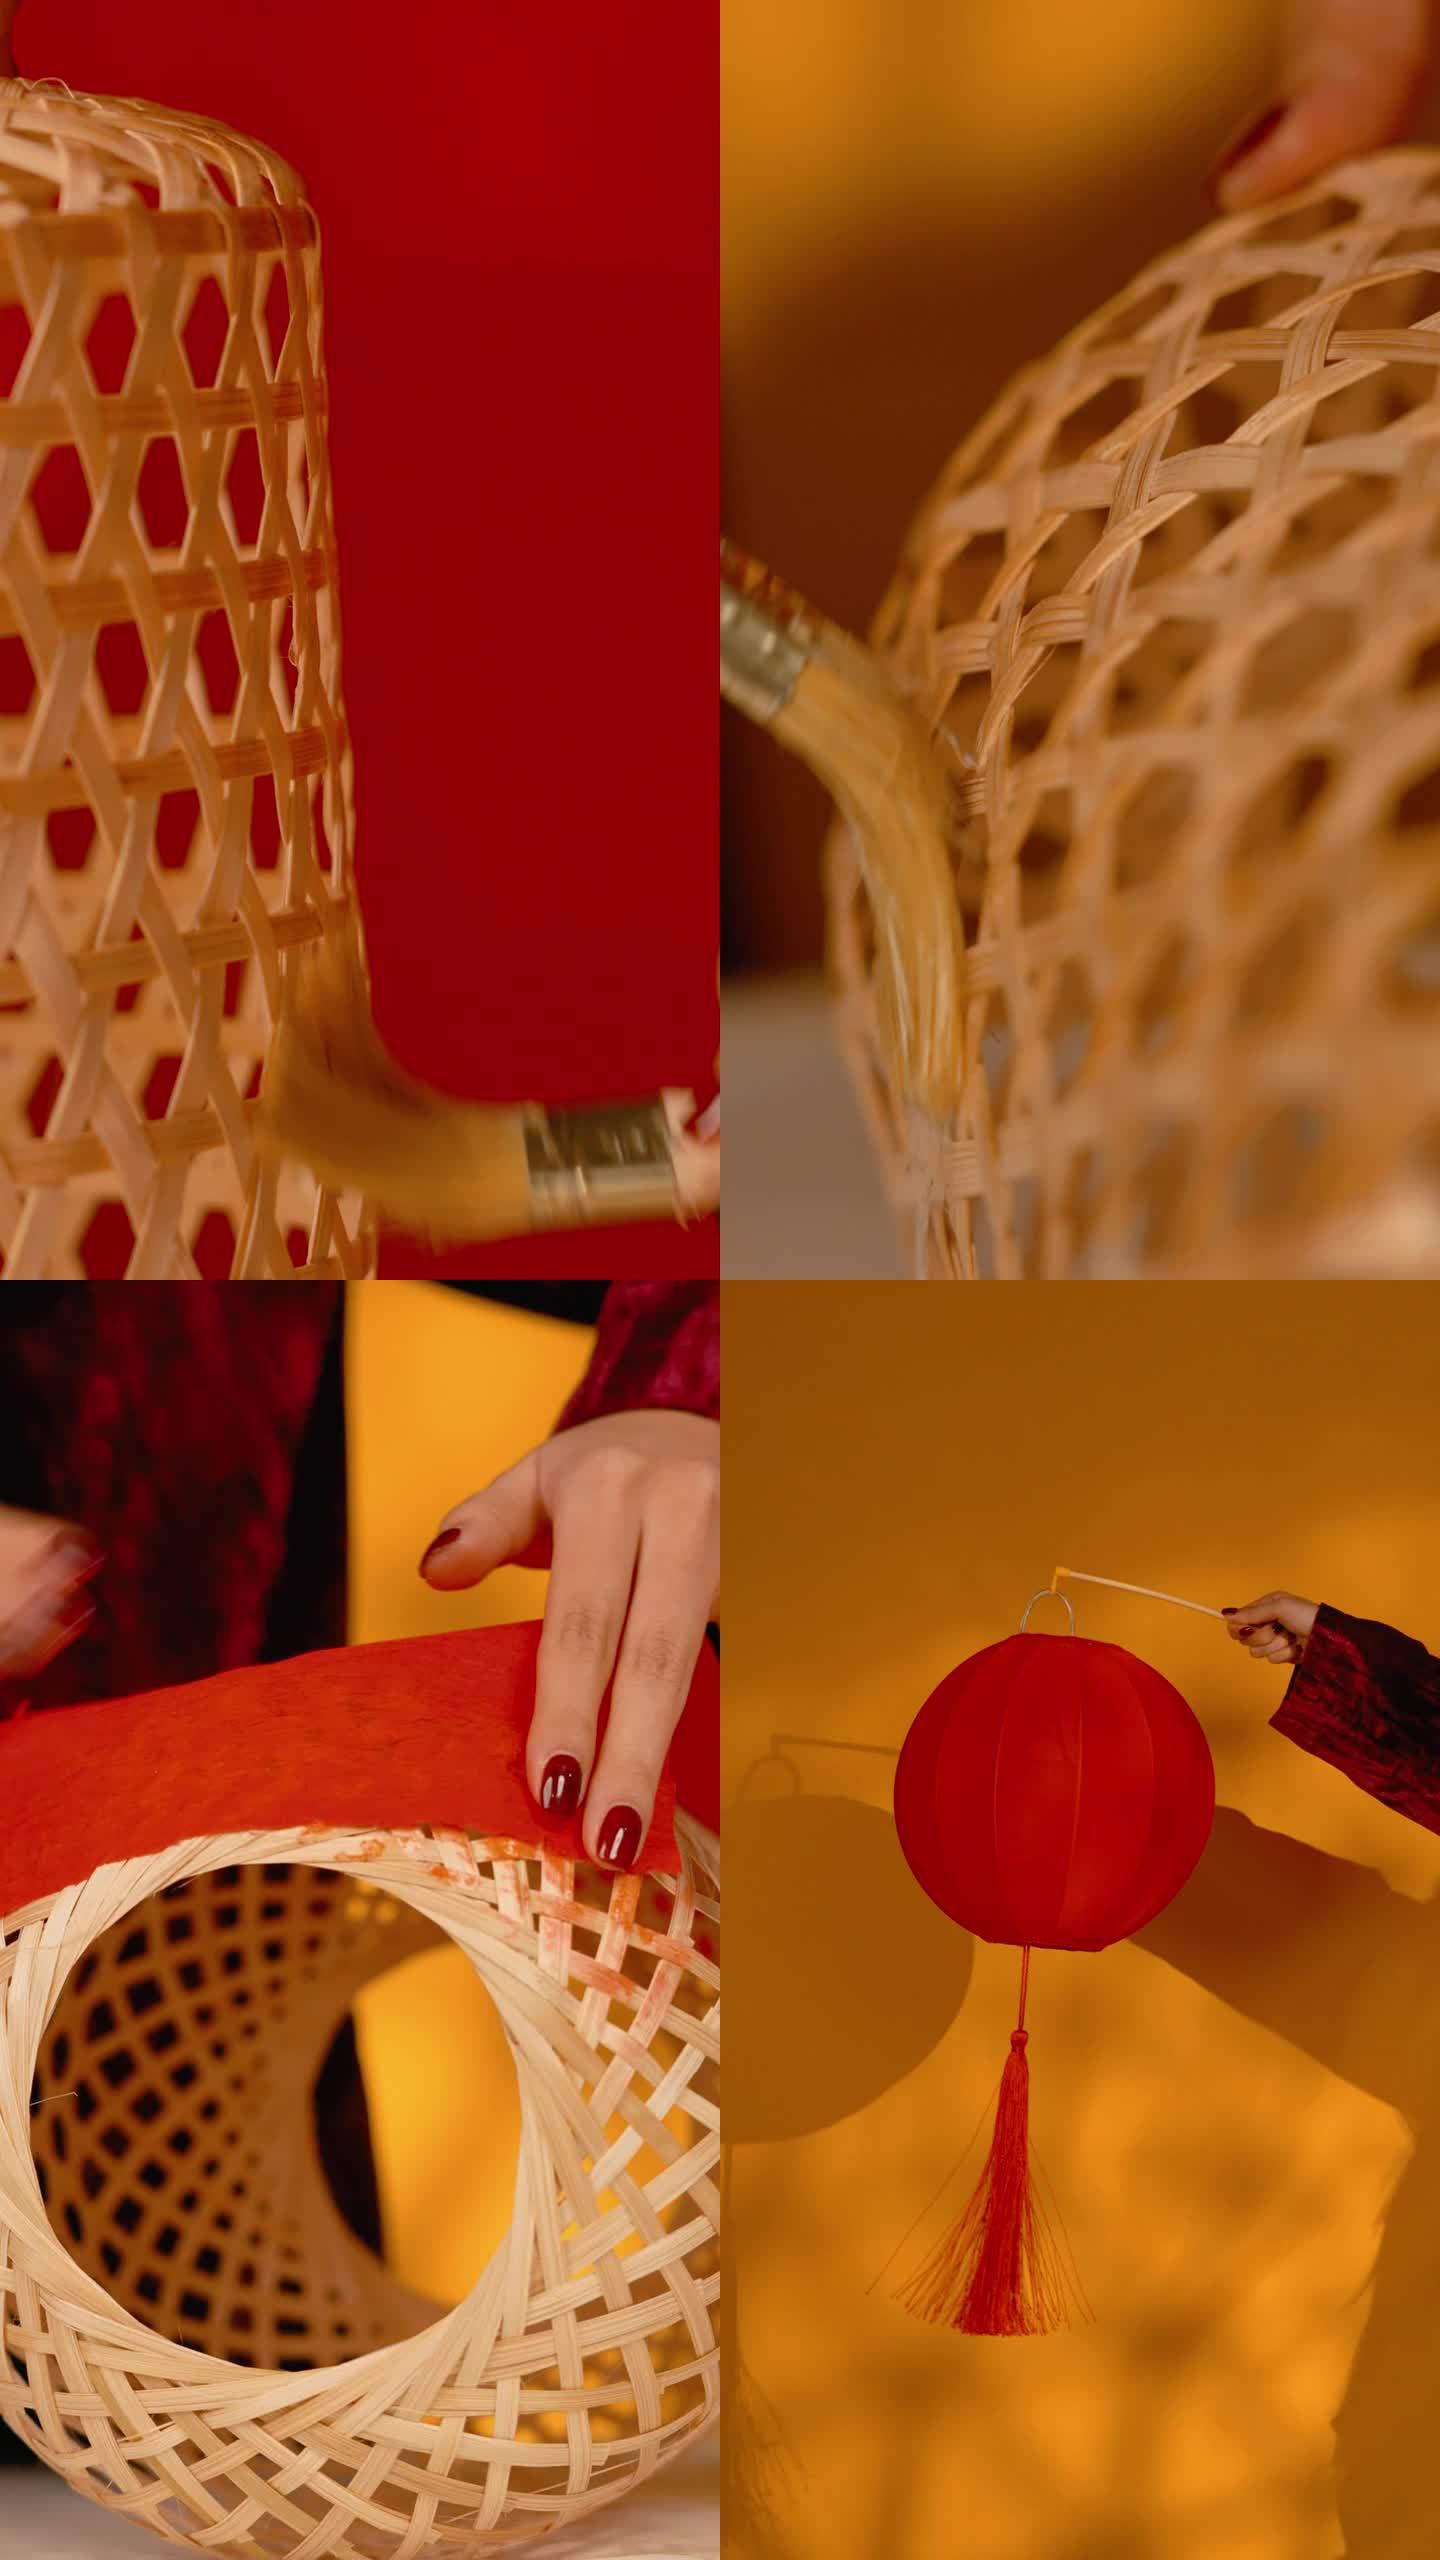 油纸灯笼传统手工制作 竖版视频